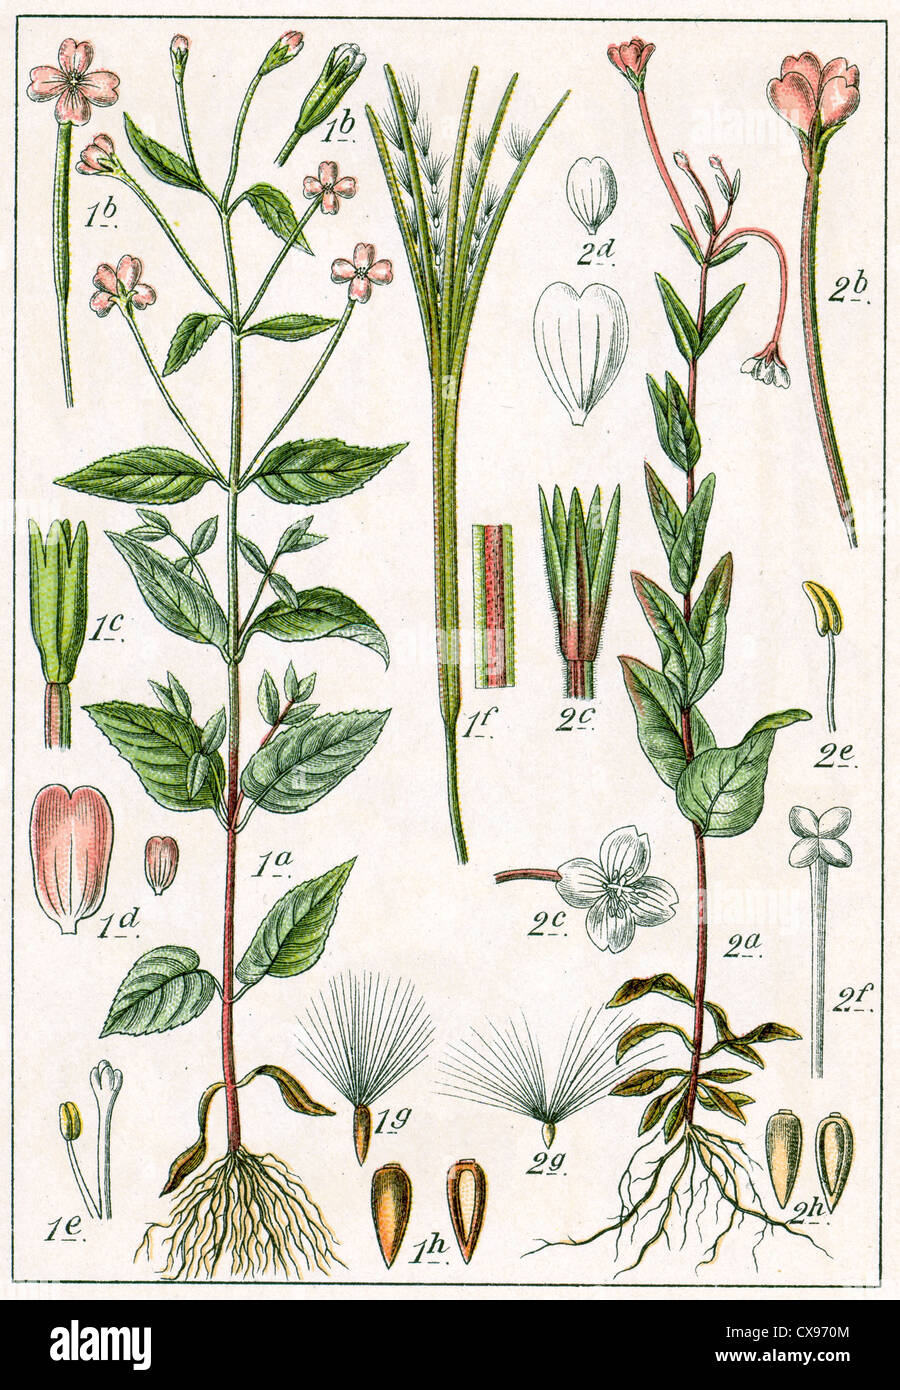 Epilobium montanum - Epilobium hypericifolium Stock Photo